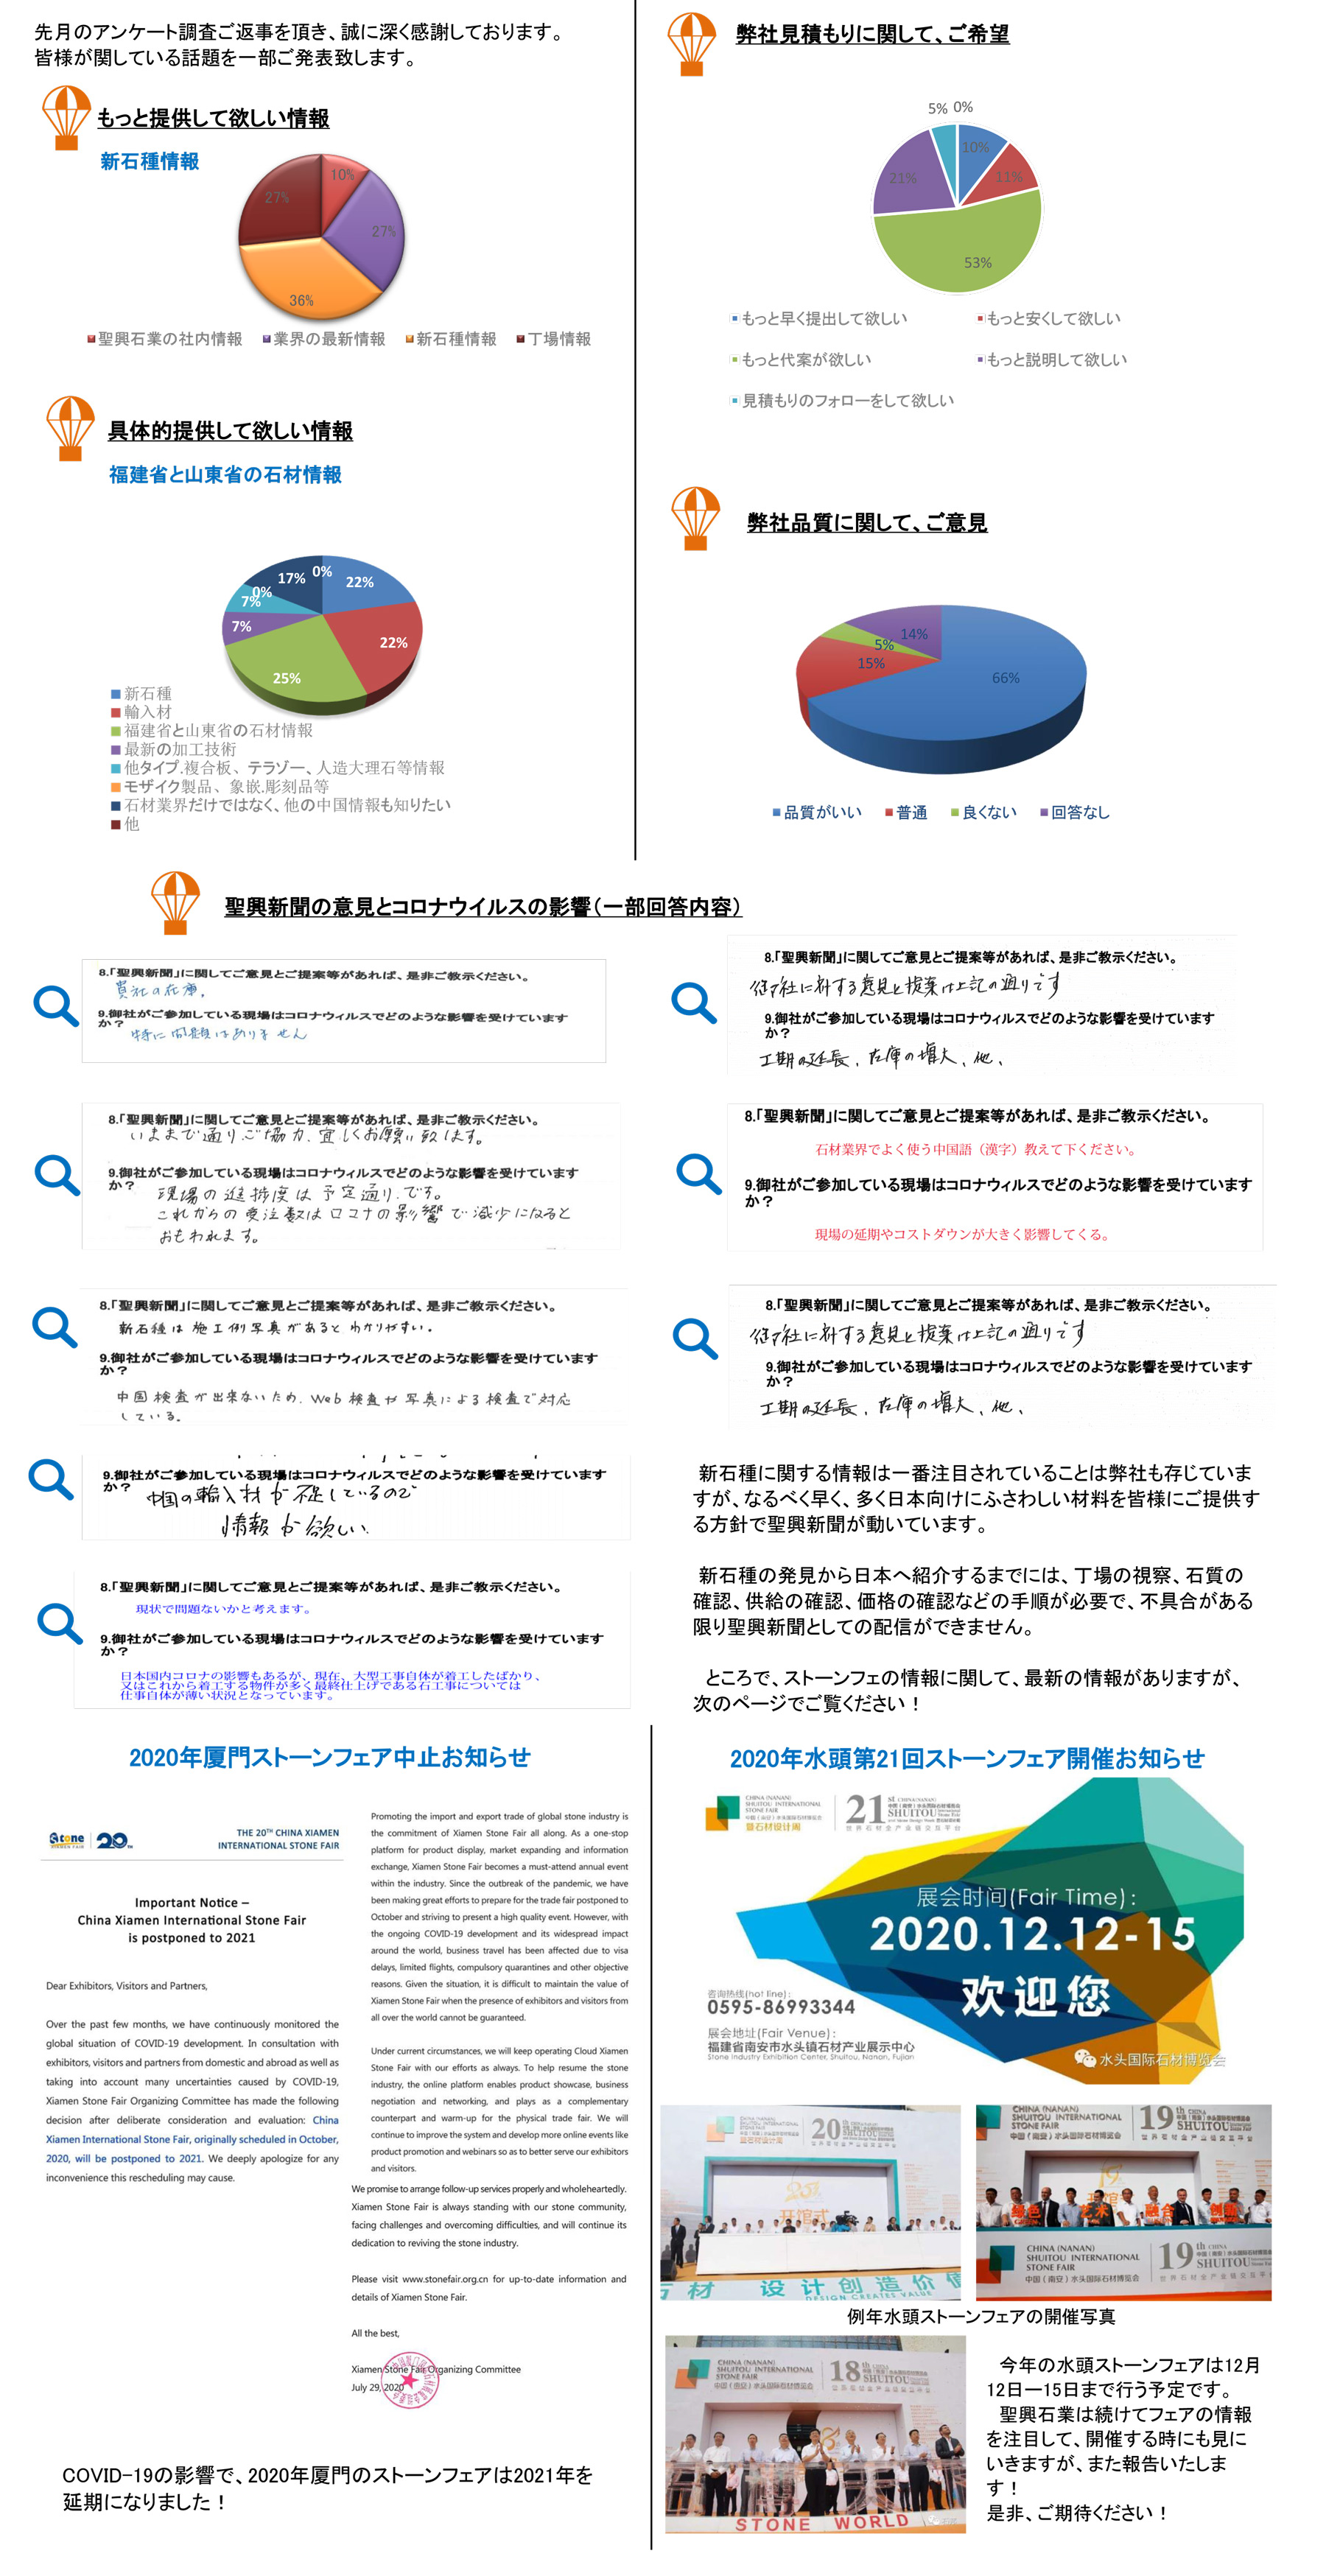 聖興新聞第29回―アンケート結果報告とストーンフェア情報-1.jpg